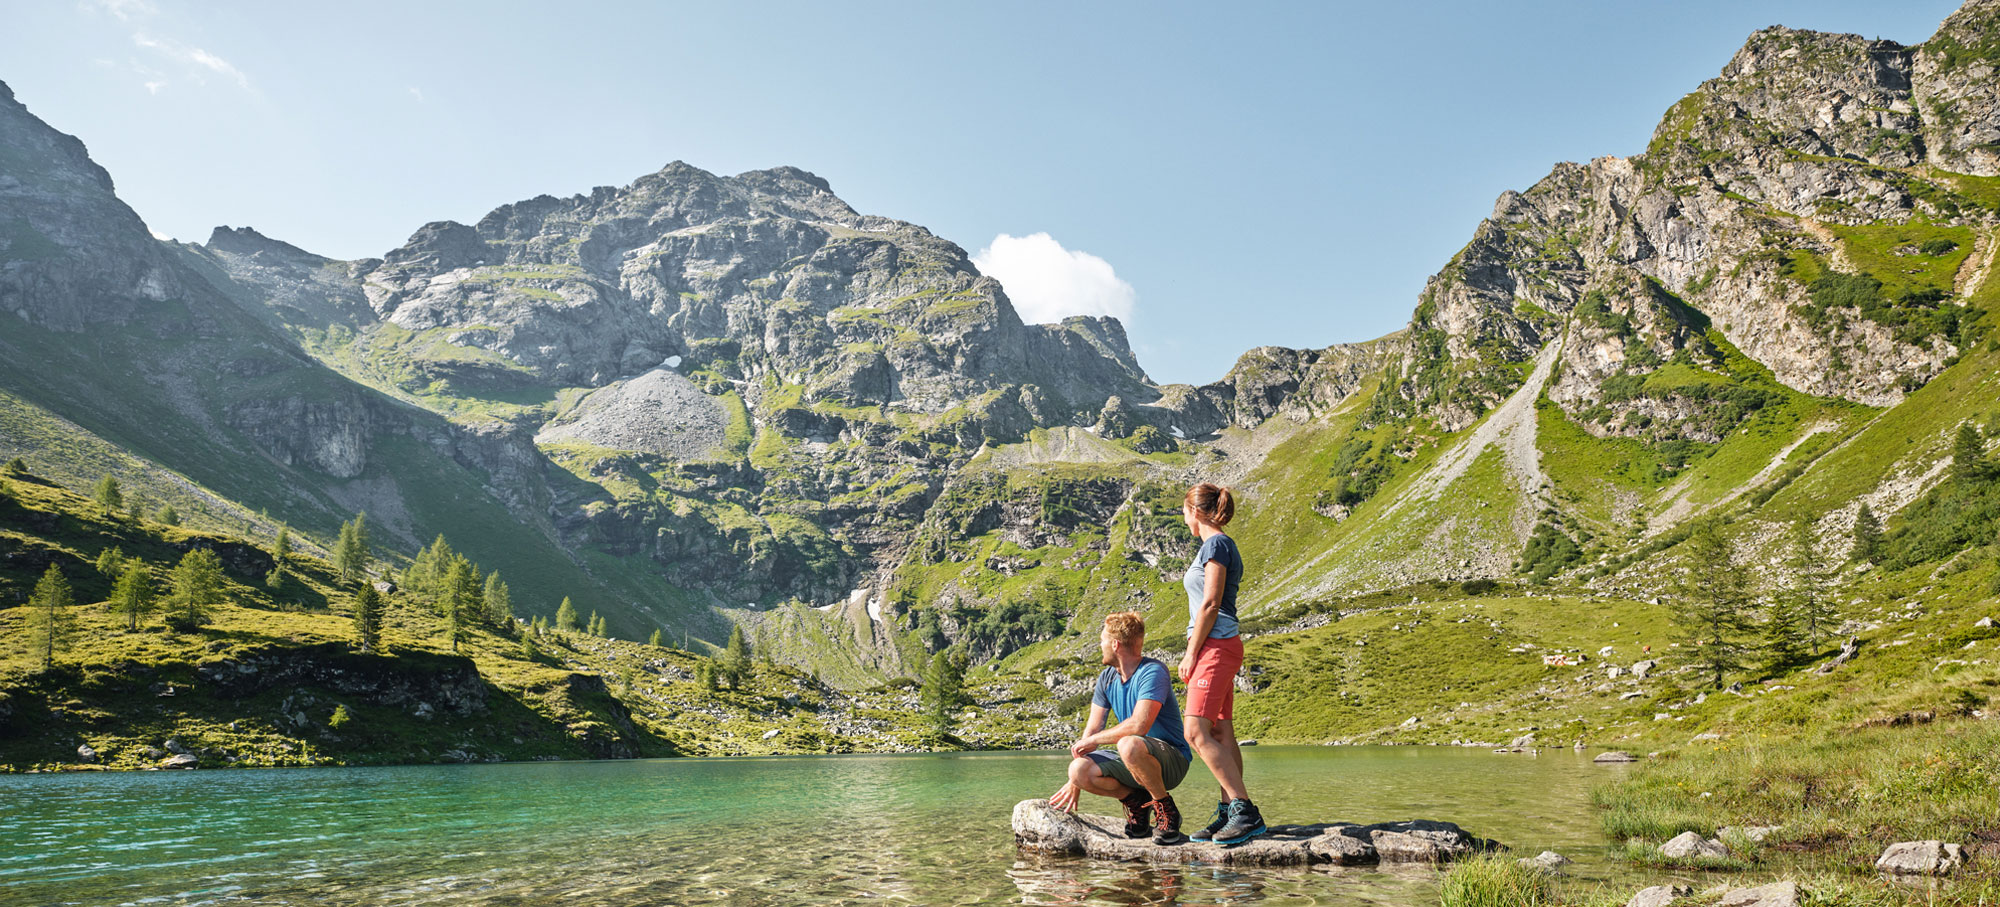 Wandernurlaub im Sommer in den Bergen der Urlaubsregion Schladming-Dachstein © Schladming-Dachstein, Herbert Raffalt